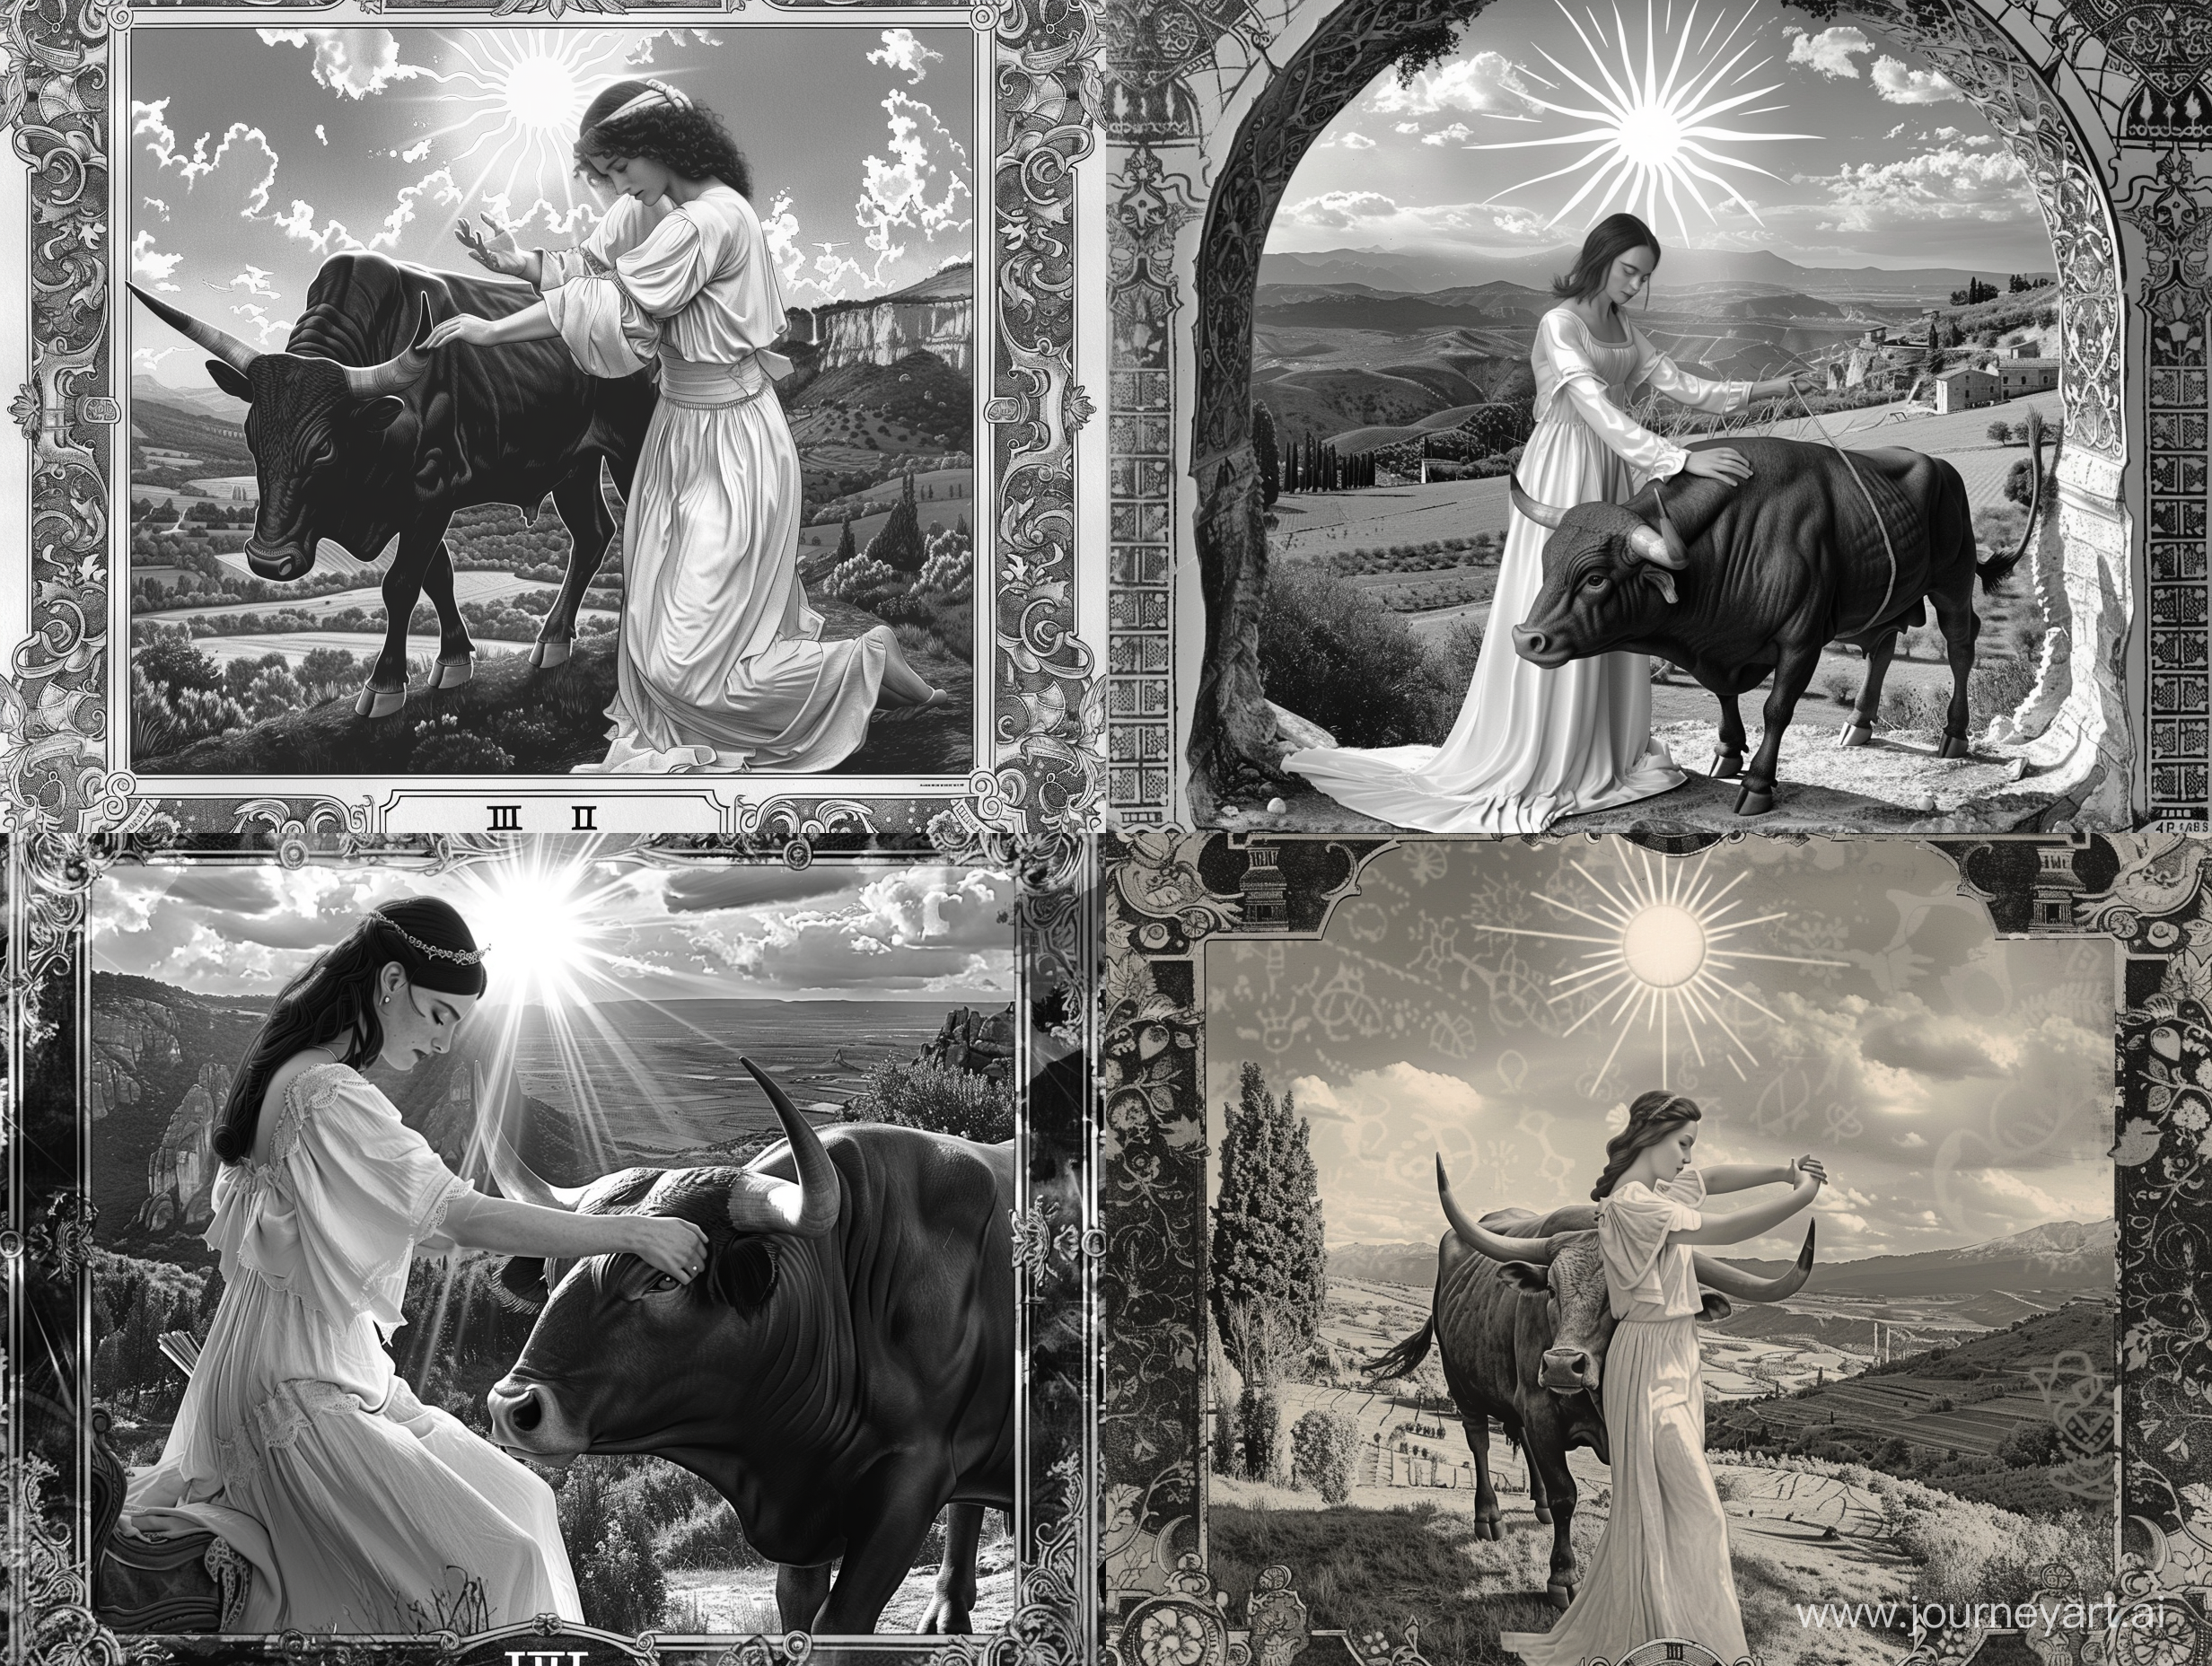 Аркан таро, на котором дева в белом гладит быка, сзади светит солнце, на фоне долина, в средневековом стиле, в стиле фрески, 4к, реалистично, прямо в камеру, вертикально, черно-белое изображение